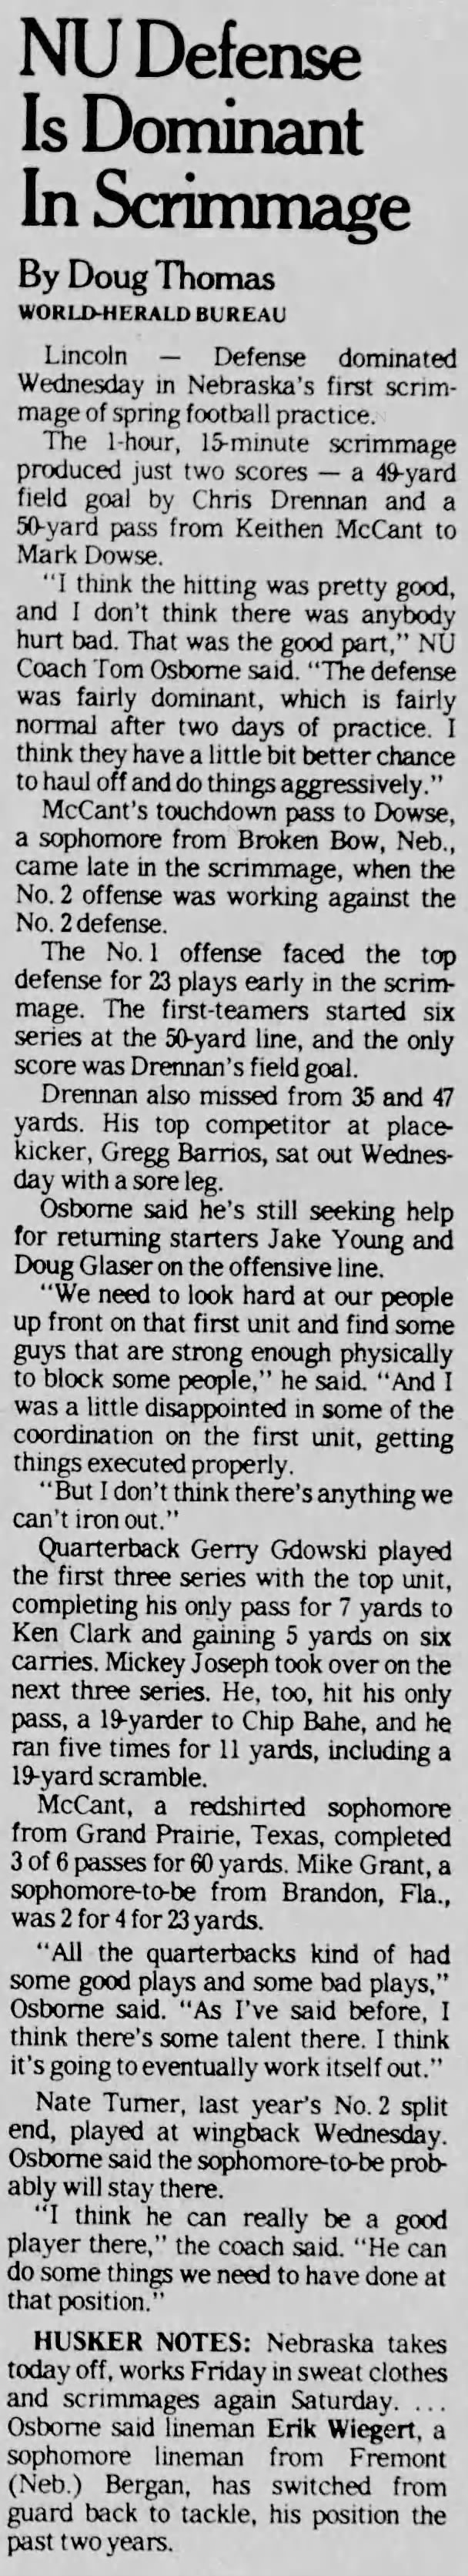 1989 Nebraska football spring scrimmage